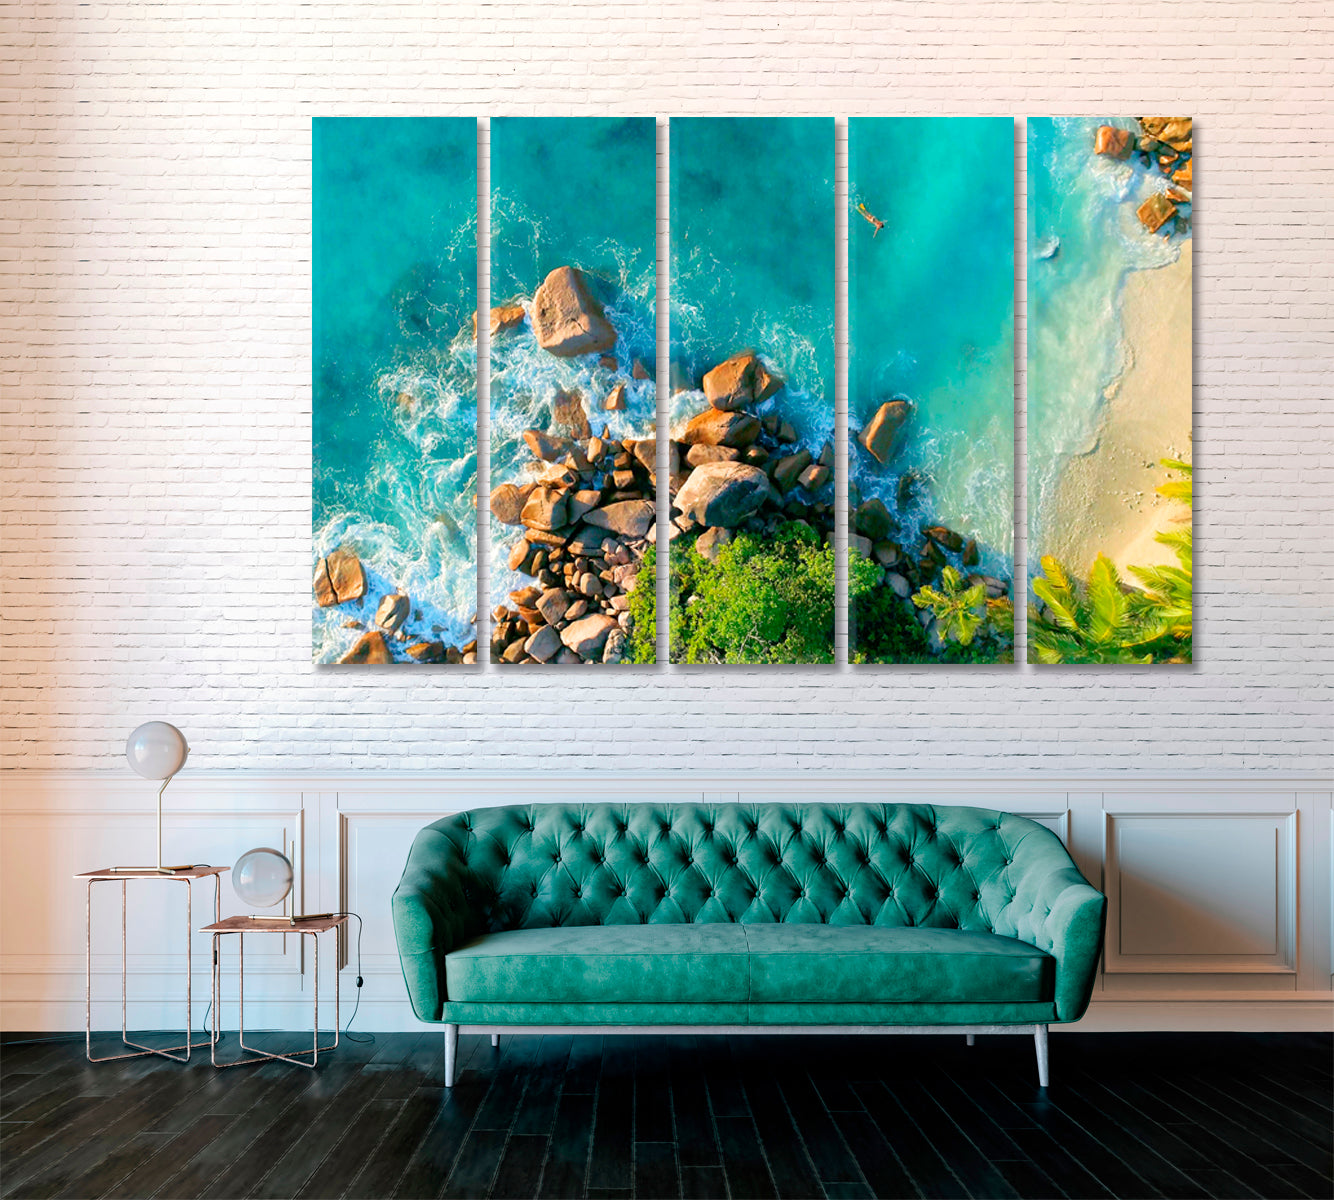 Tropical Beach Anse Lazio Seychelles Canvas Print ArtLexy 5 Panels 36"x24" inches 